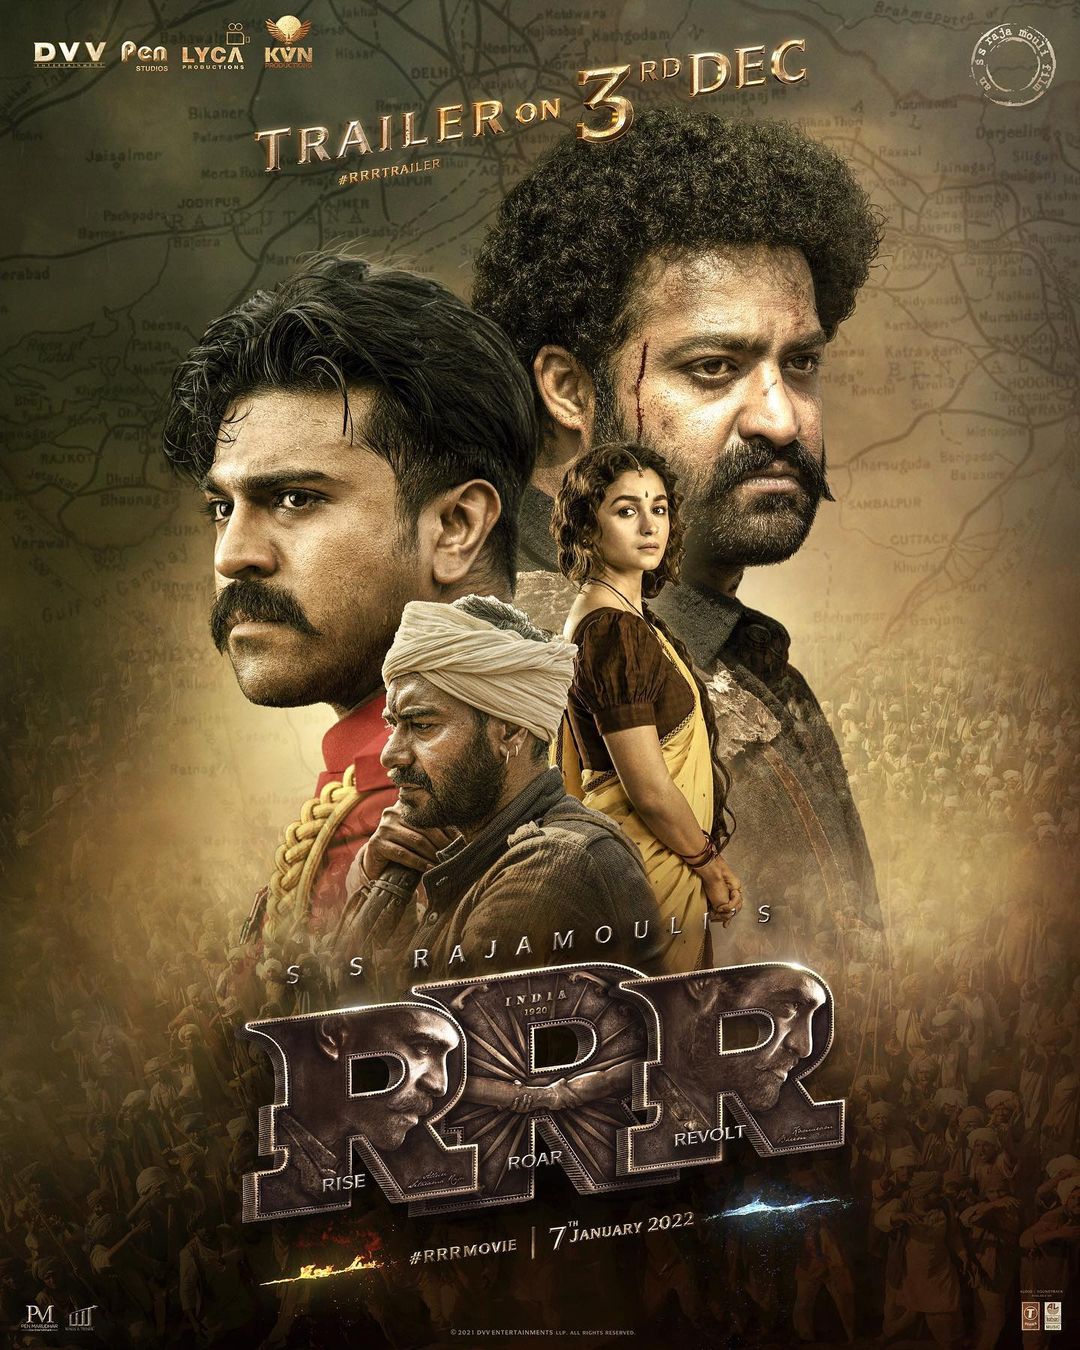 RRR Trailer (Tamil) - NTR, Ram Charan, Ajay Devgn, Alia Bhatt | SS Rajamouli | Jan 7th 2022 1